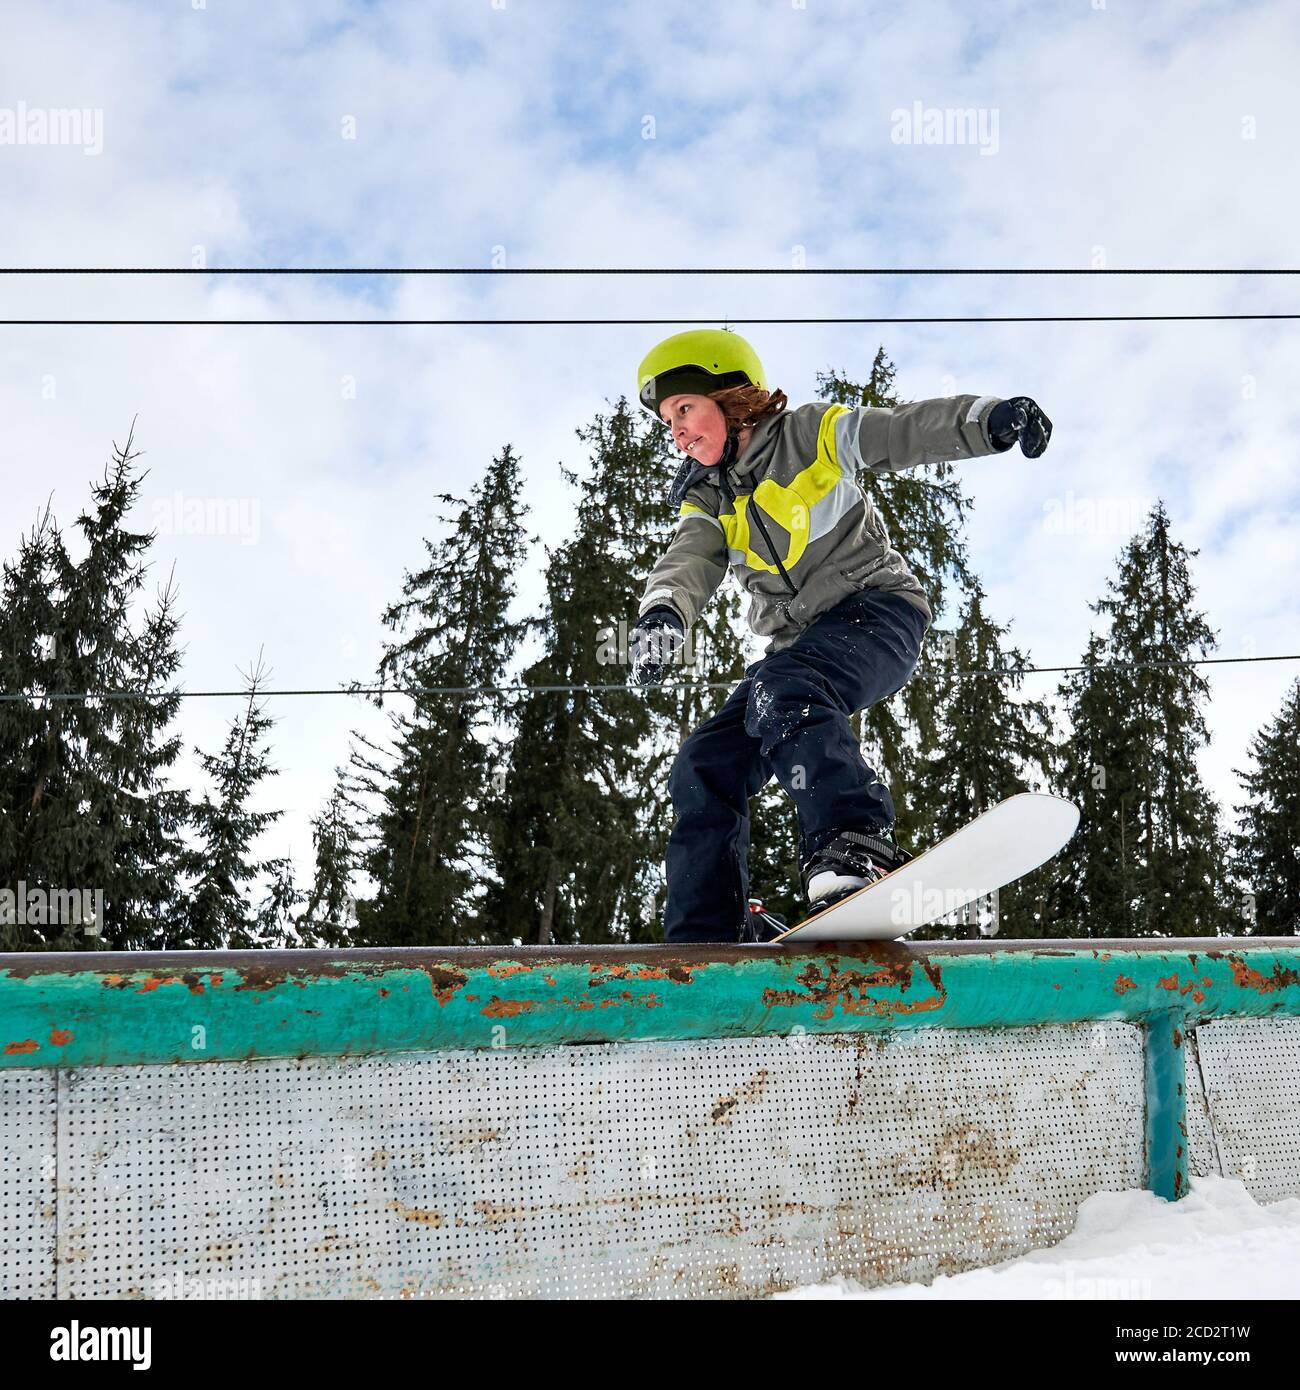 Capretto snowboarder in casco equitazione snowboard sotto il bel cielo nuvoloso con alberi di pino sullo sfondo. Ragazzo che esegue trucchi con snowboard. Concetto di snowboard e attività sportive invernali. Foto Stock